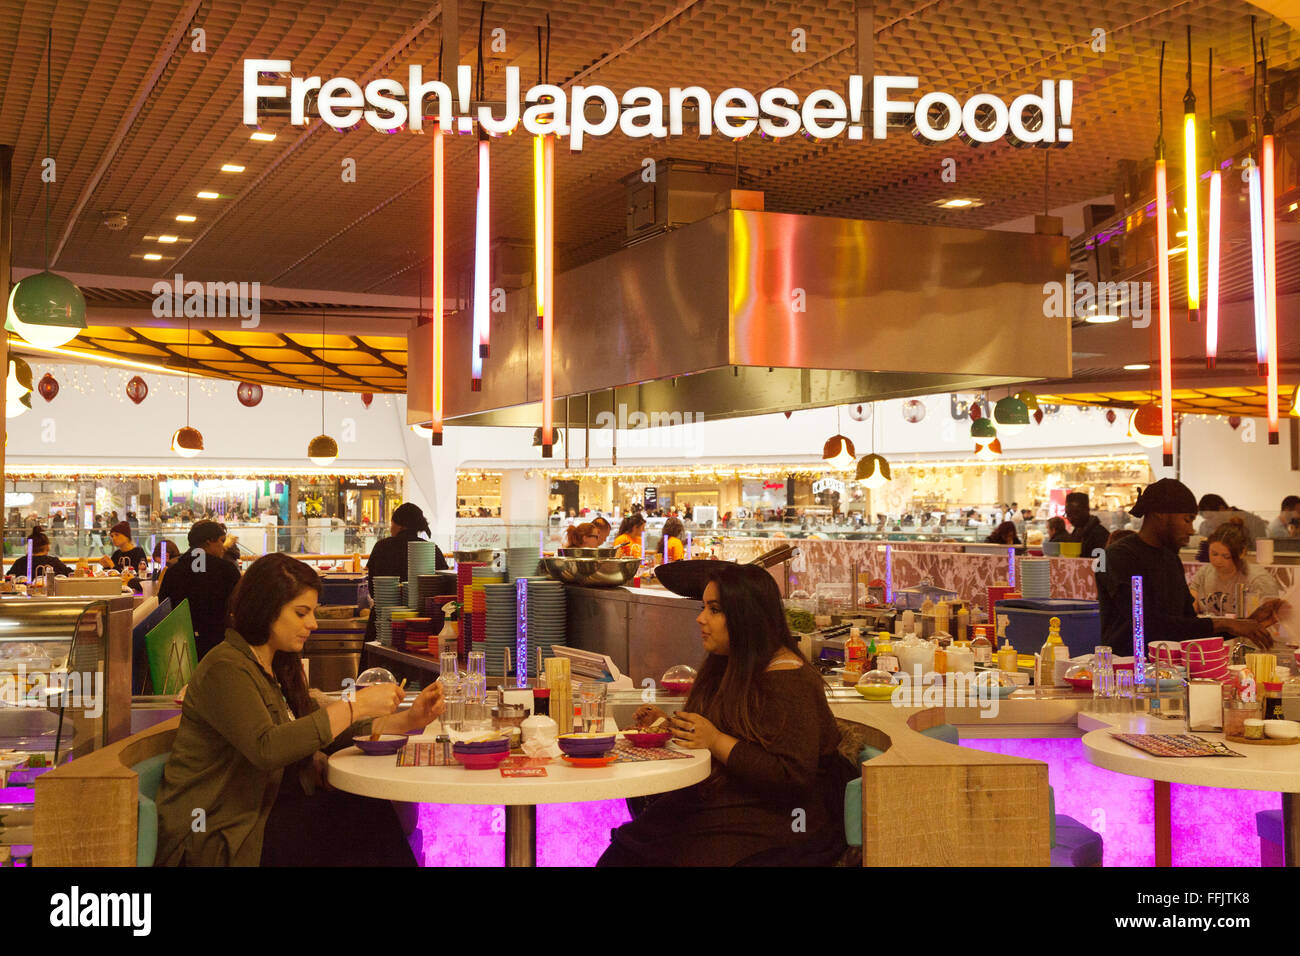 Les personnes mangeant de la nourriture japonaise, l'arène, Birmingham UK Banque D'Images